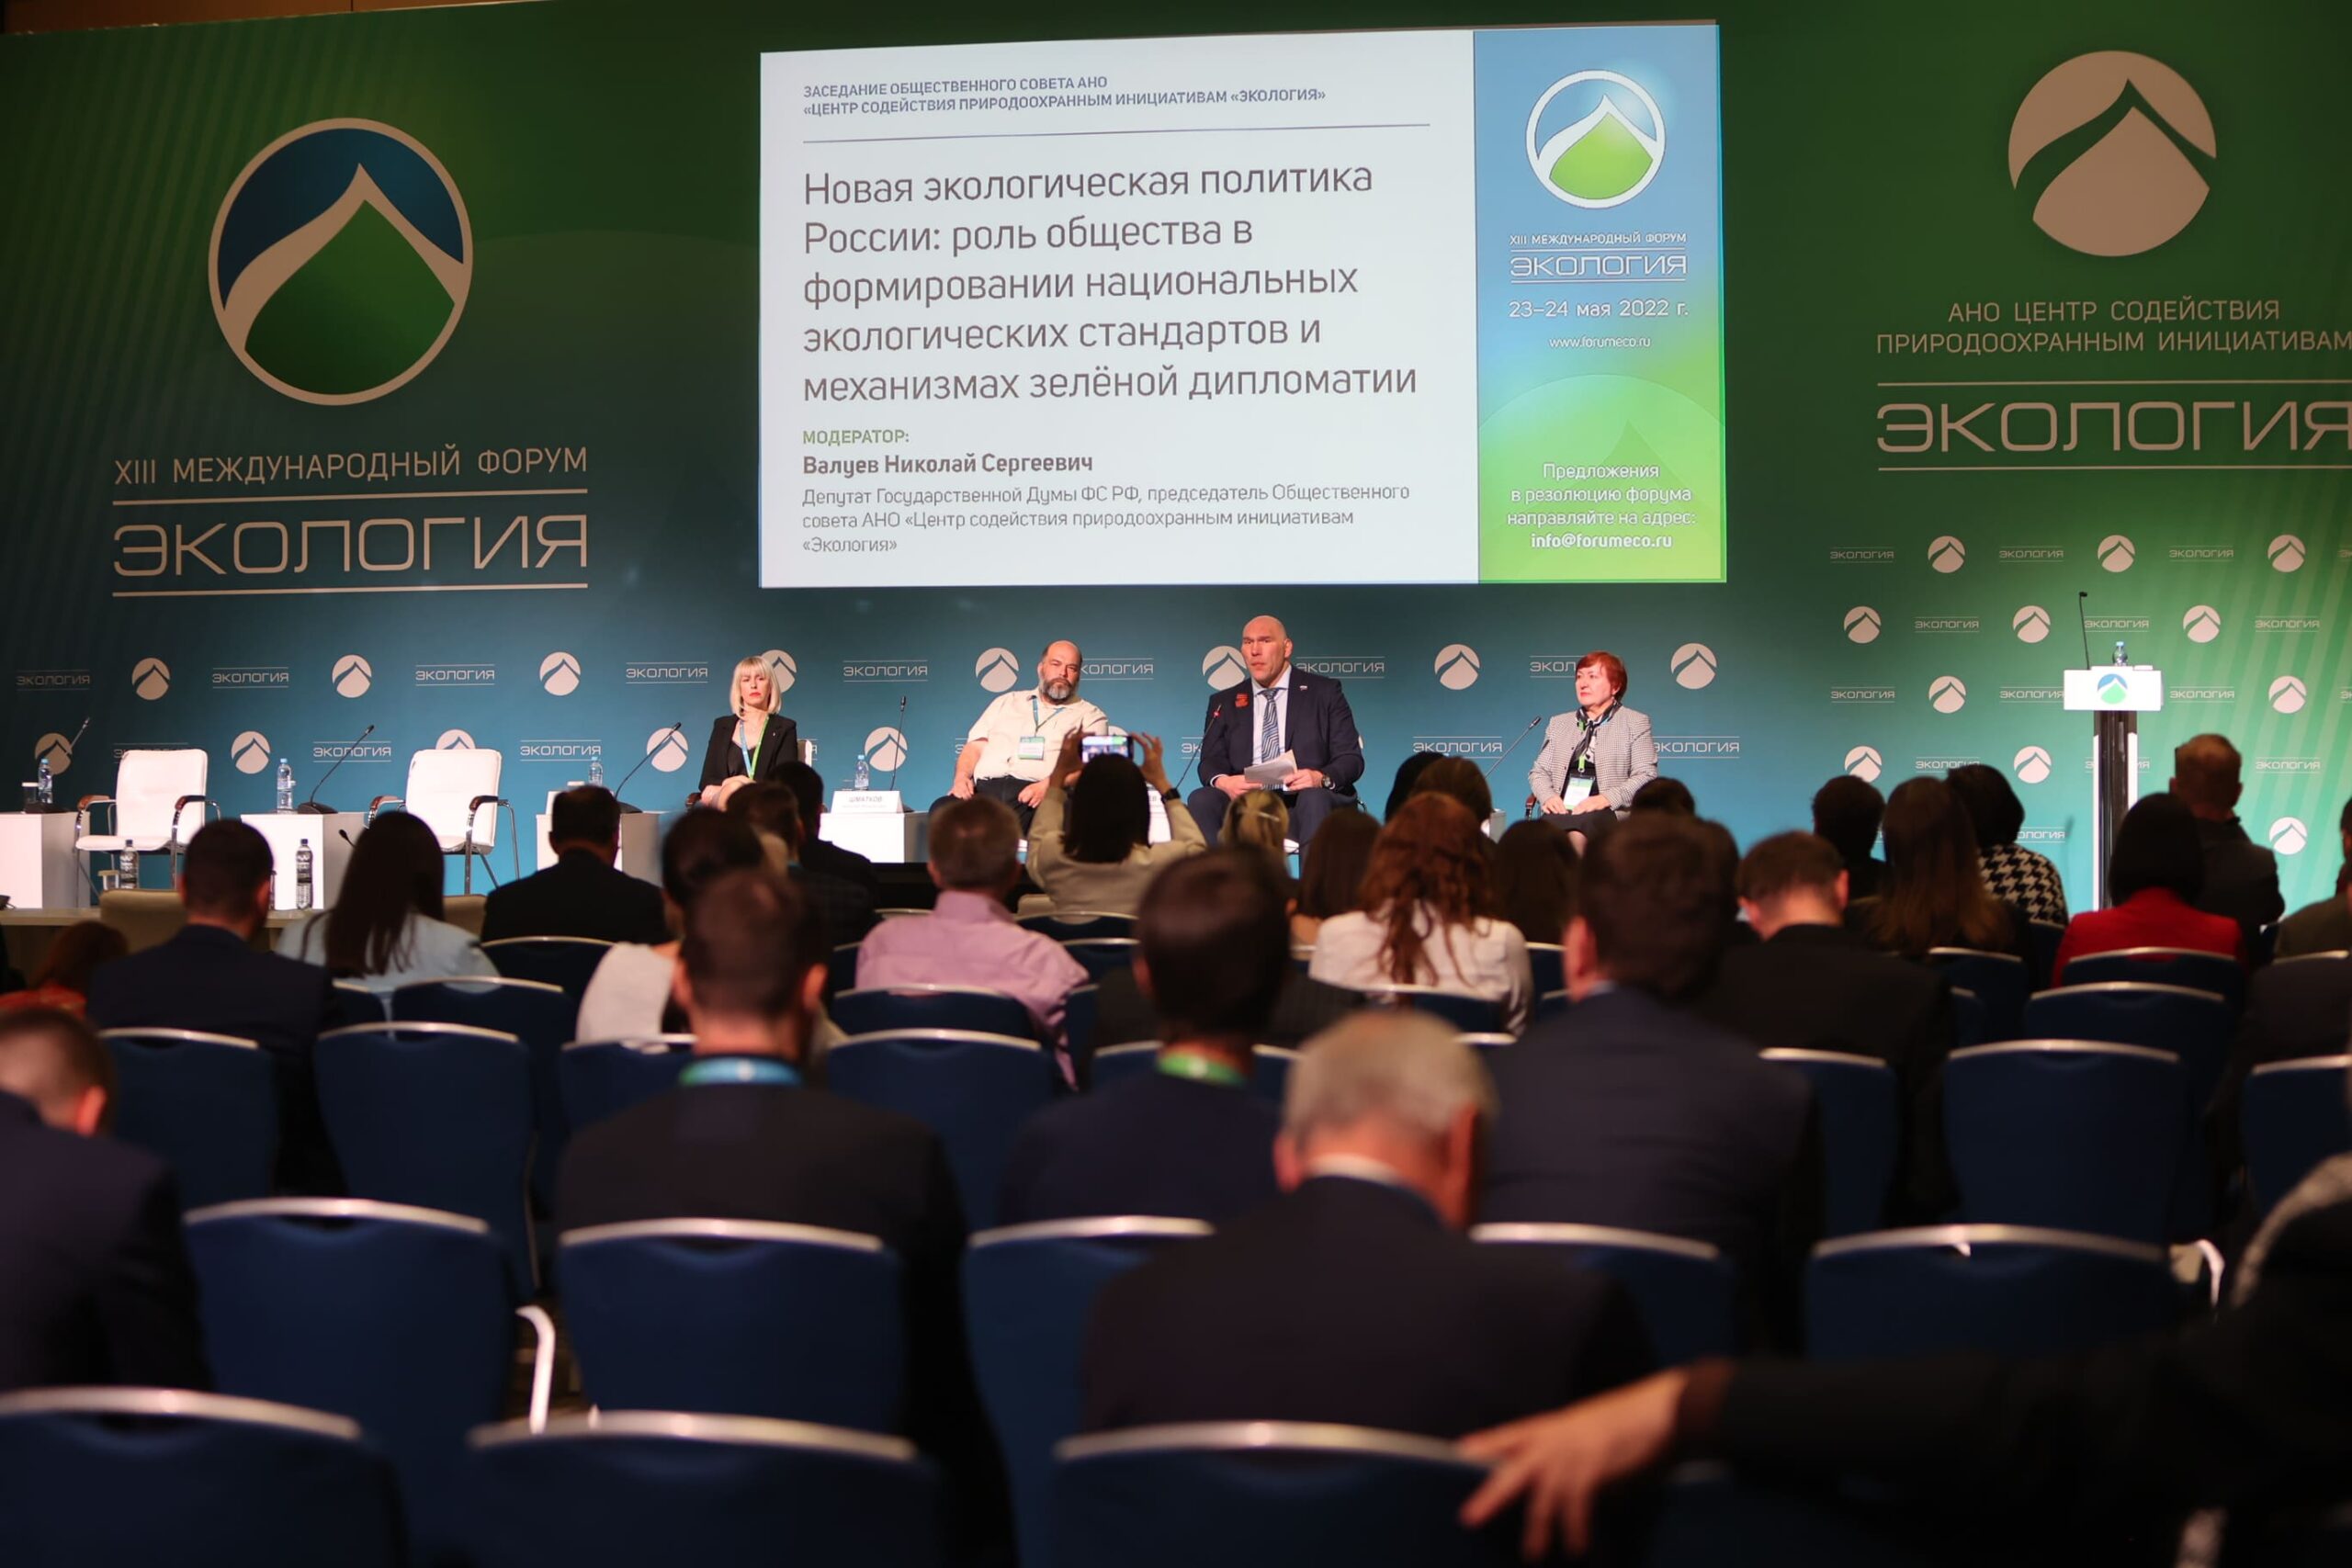 На форуме «Экология» был представлен Экостандарт Вологды, разработанный Российским экологическим обществом